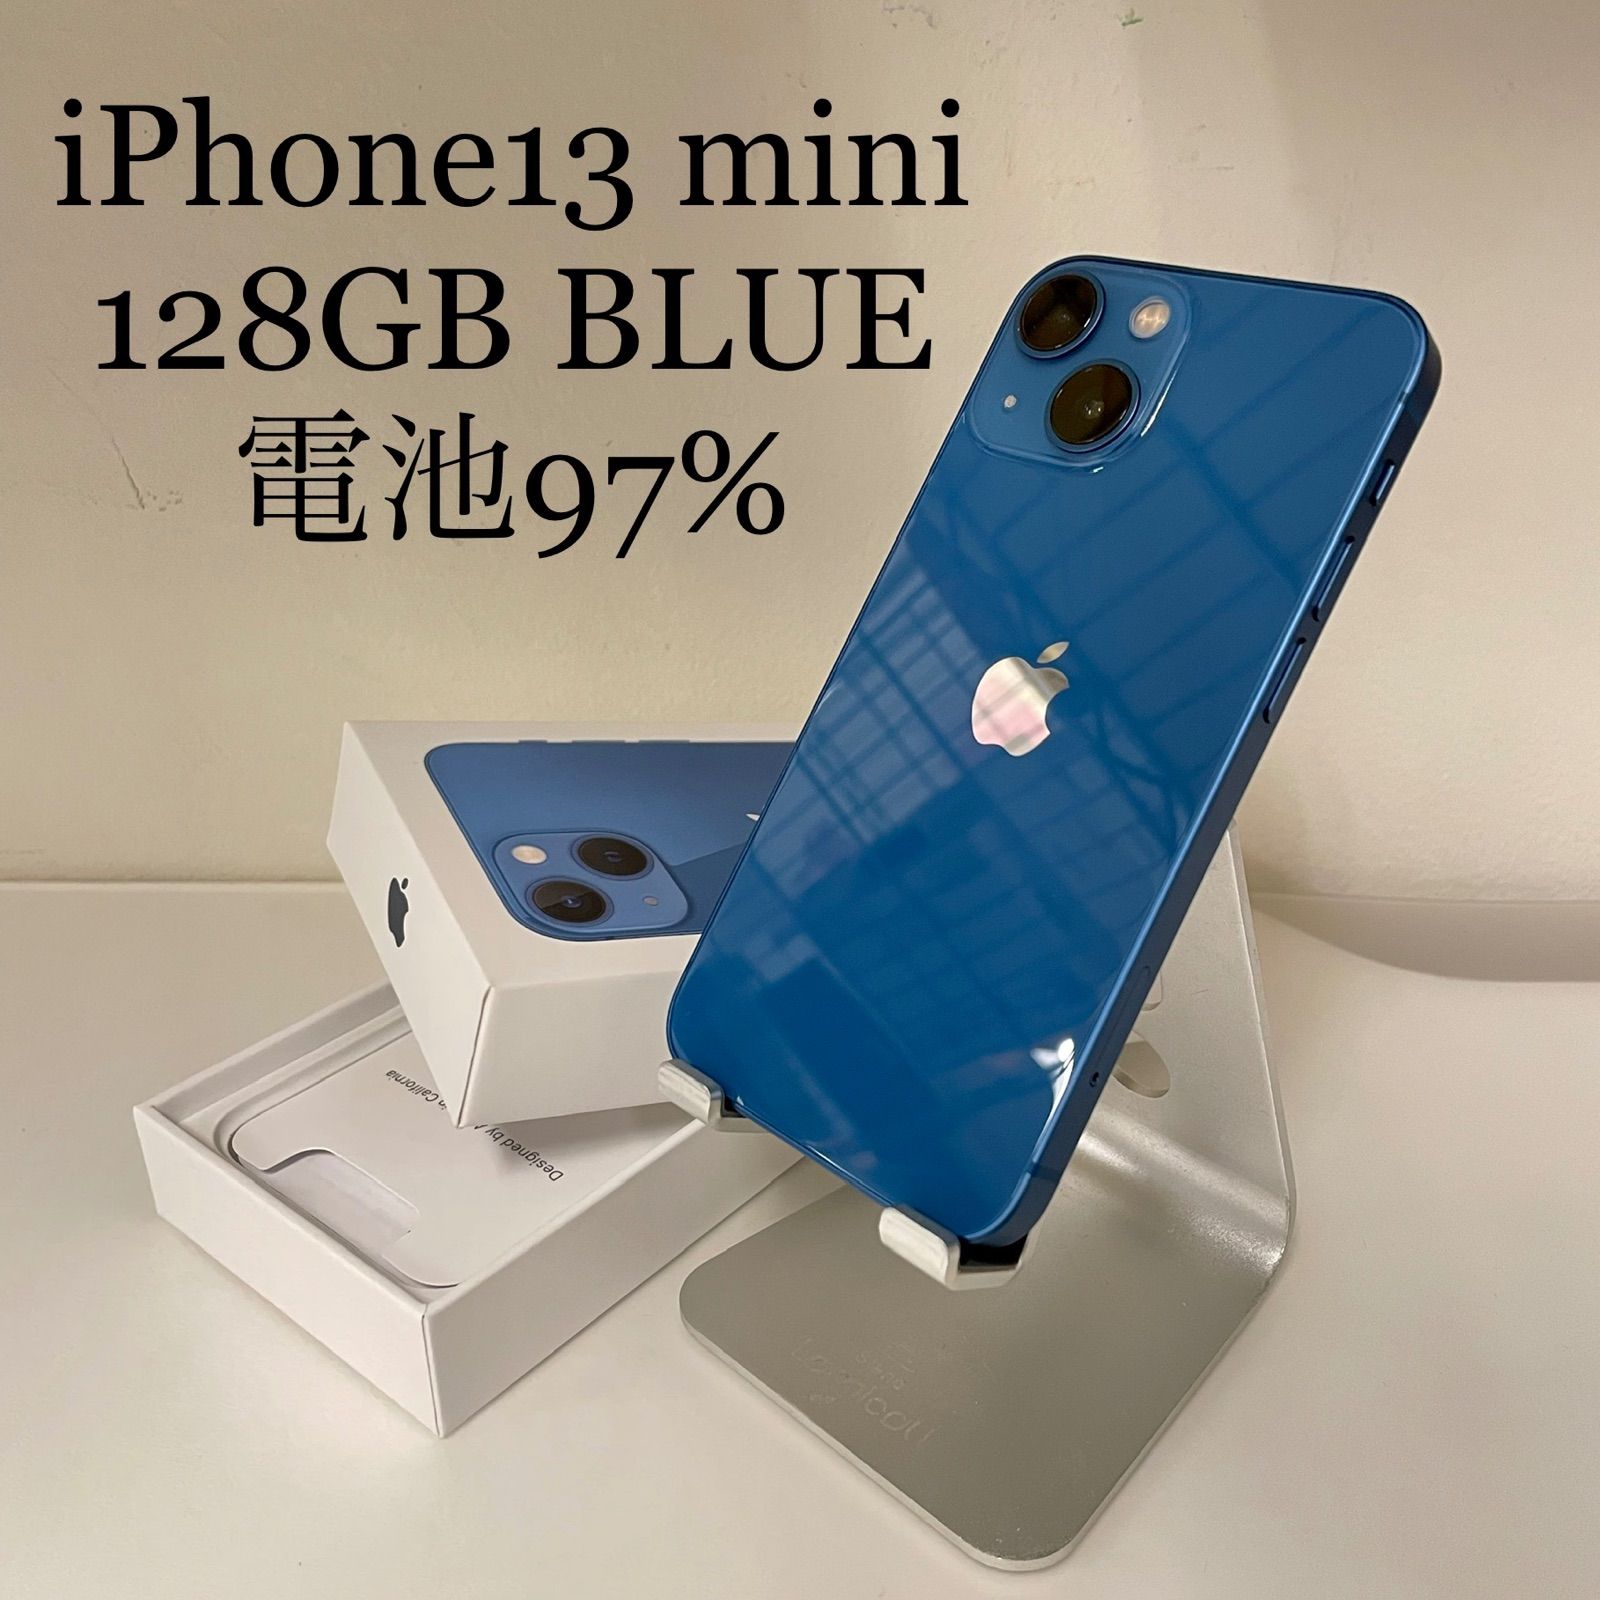 iPhone13 mini ブルー 128GB 電池残量97%